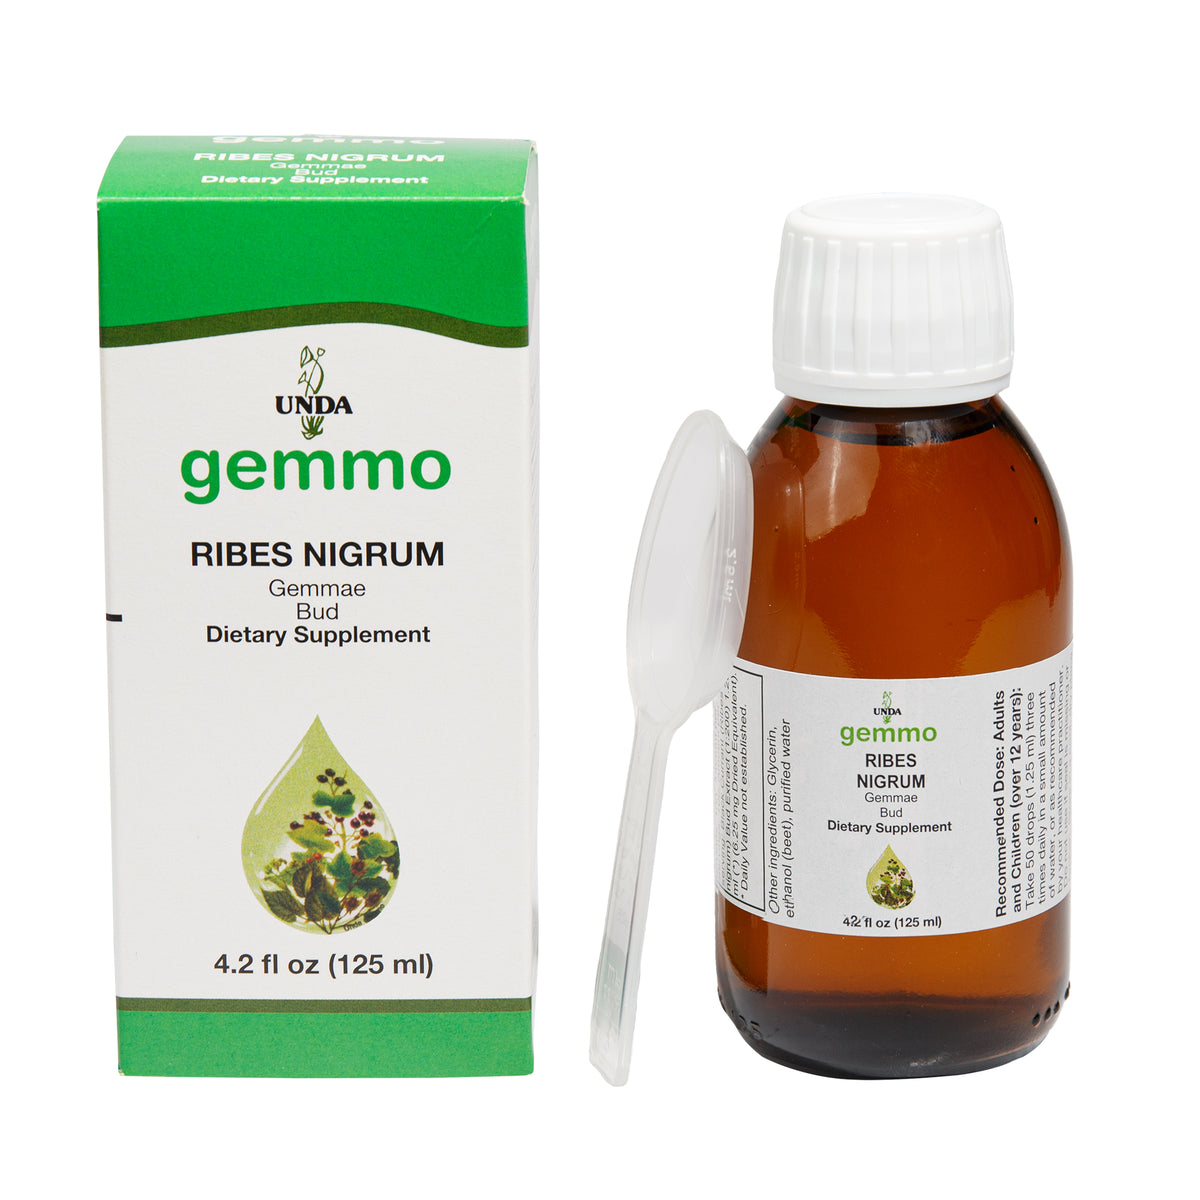 Gemmo Ribes Nigrum (Black Currant) Buds (4.5. fl oz) #10065387